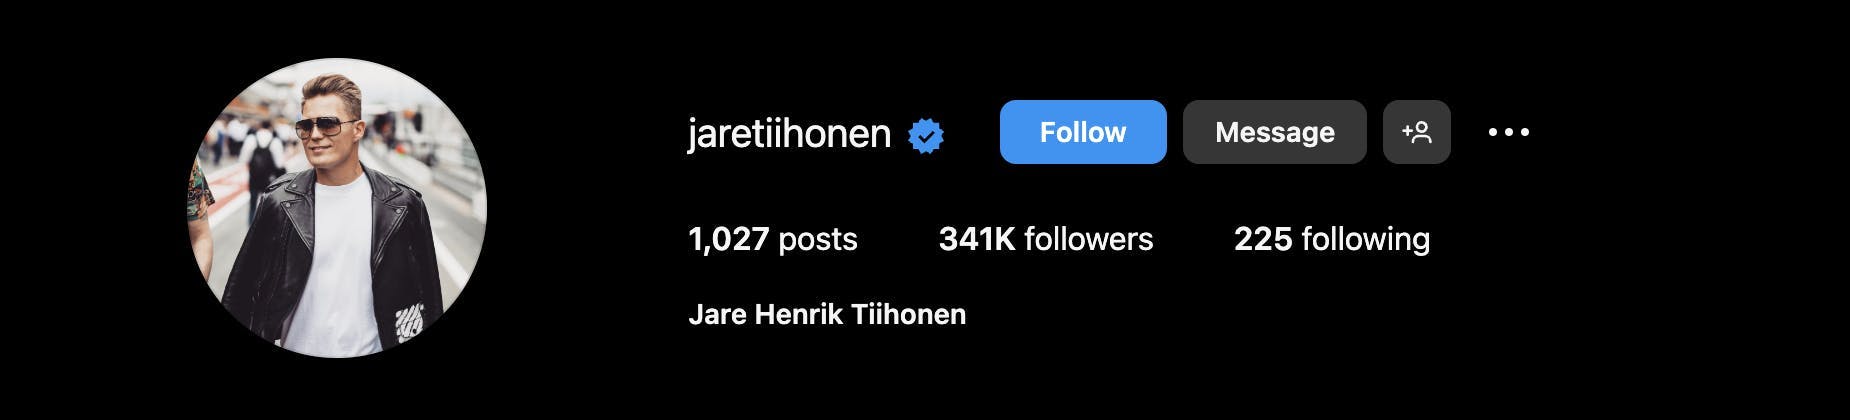 Screenshot of jaretiihonen's Instagram profile